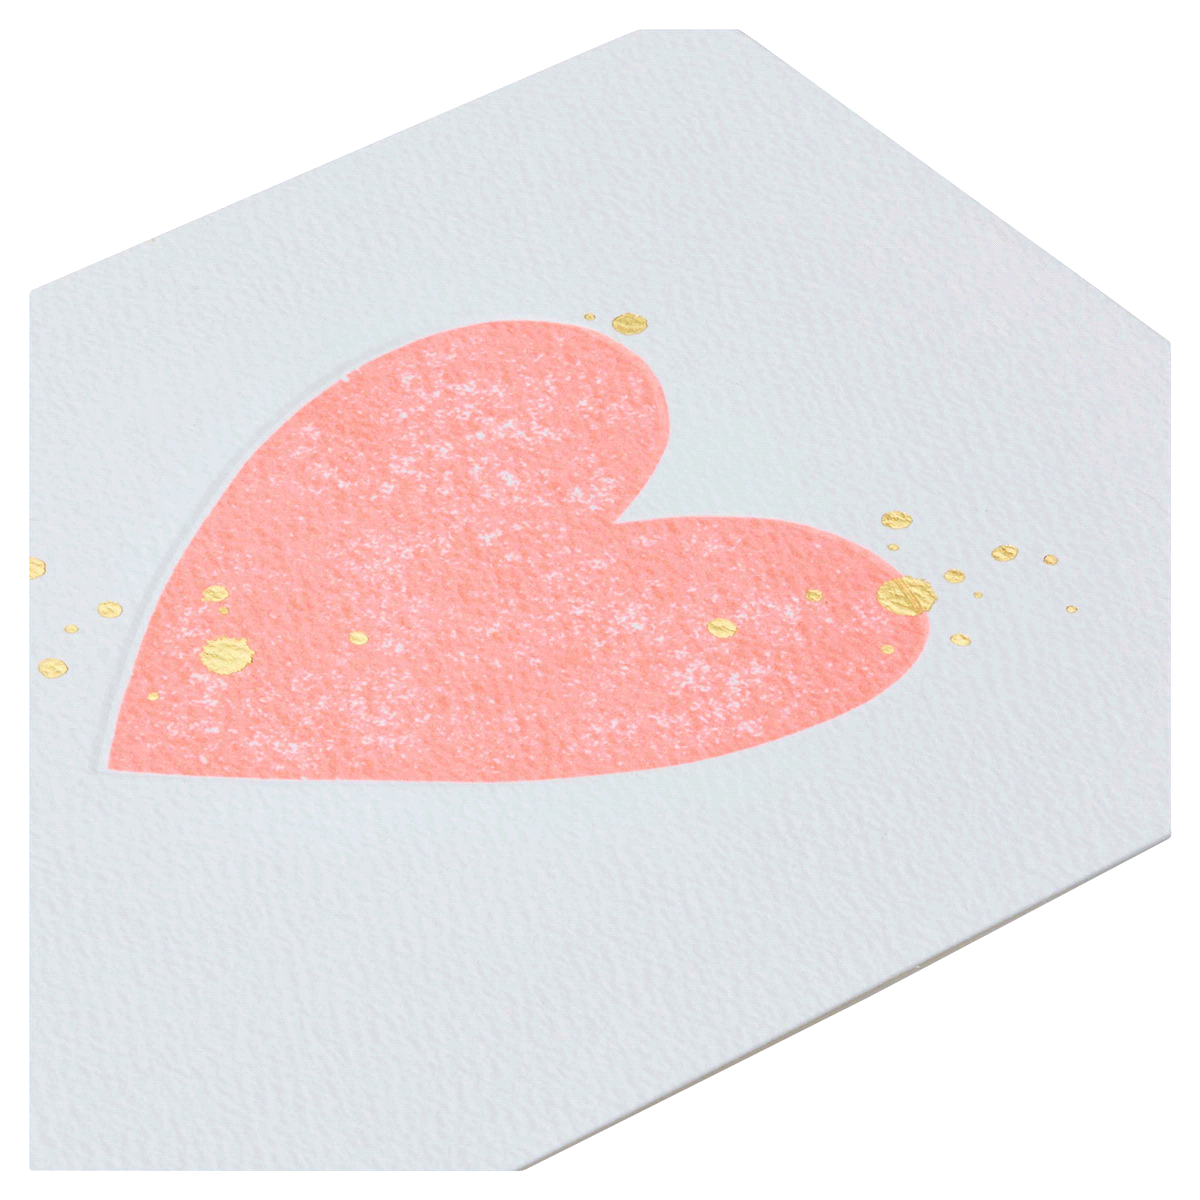 slide 3 of 5, American Greetings (S32) Neon Pink Heart - Blank Card, 1 ct